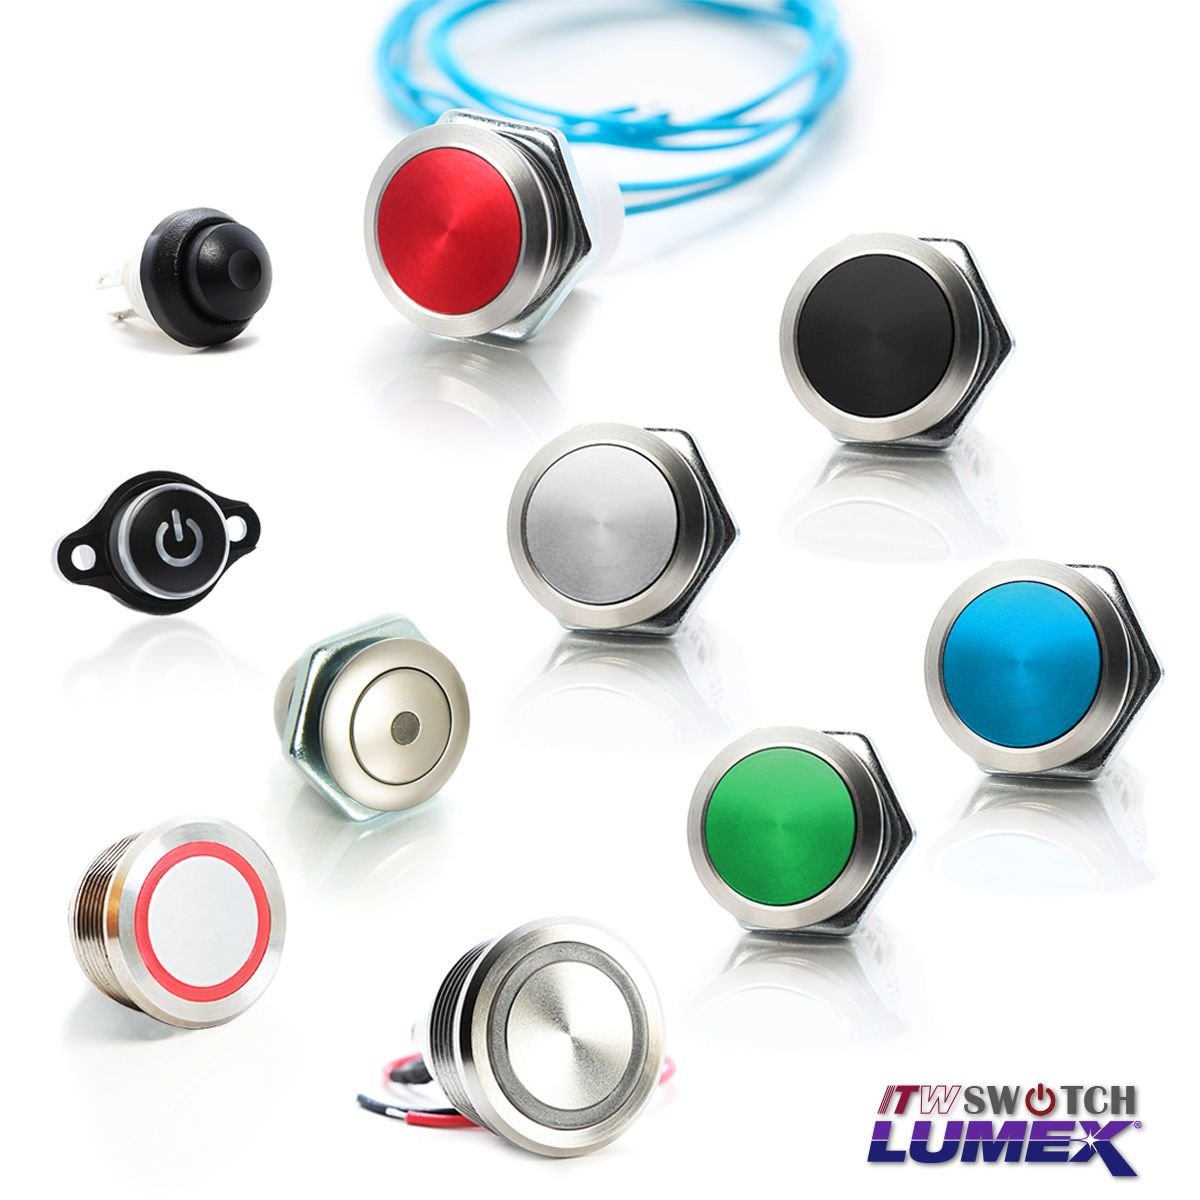 ITW Lumex Switchпредлагает широкий выбор кнопочных переключателей.